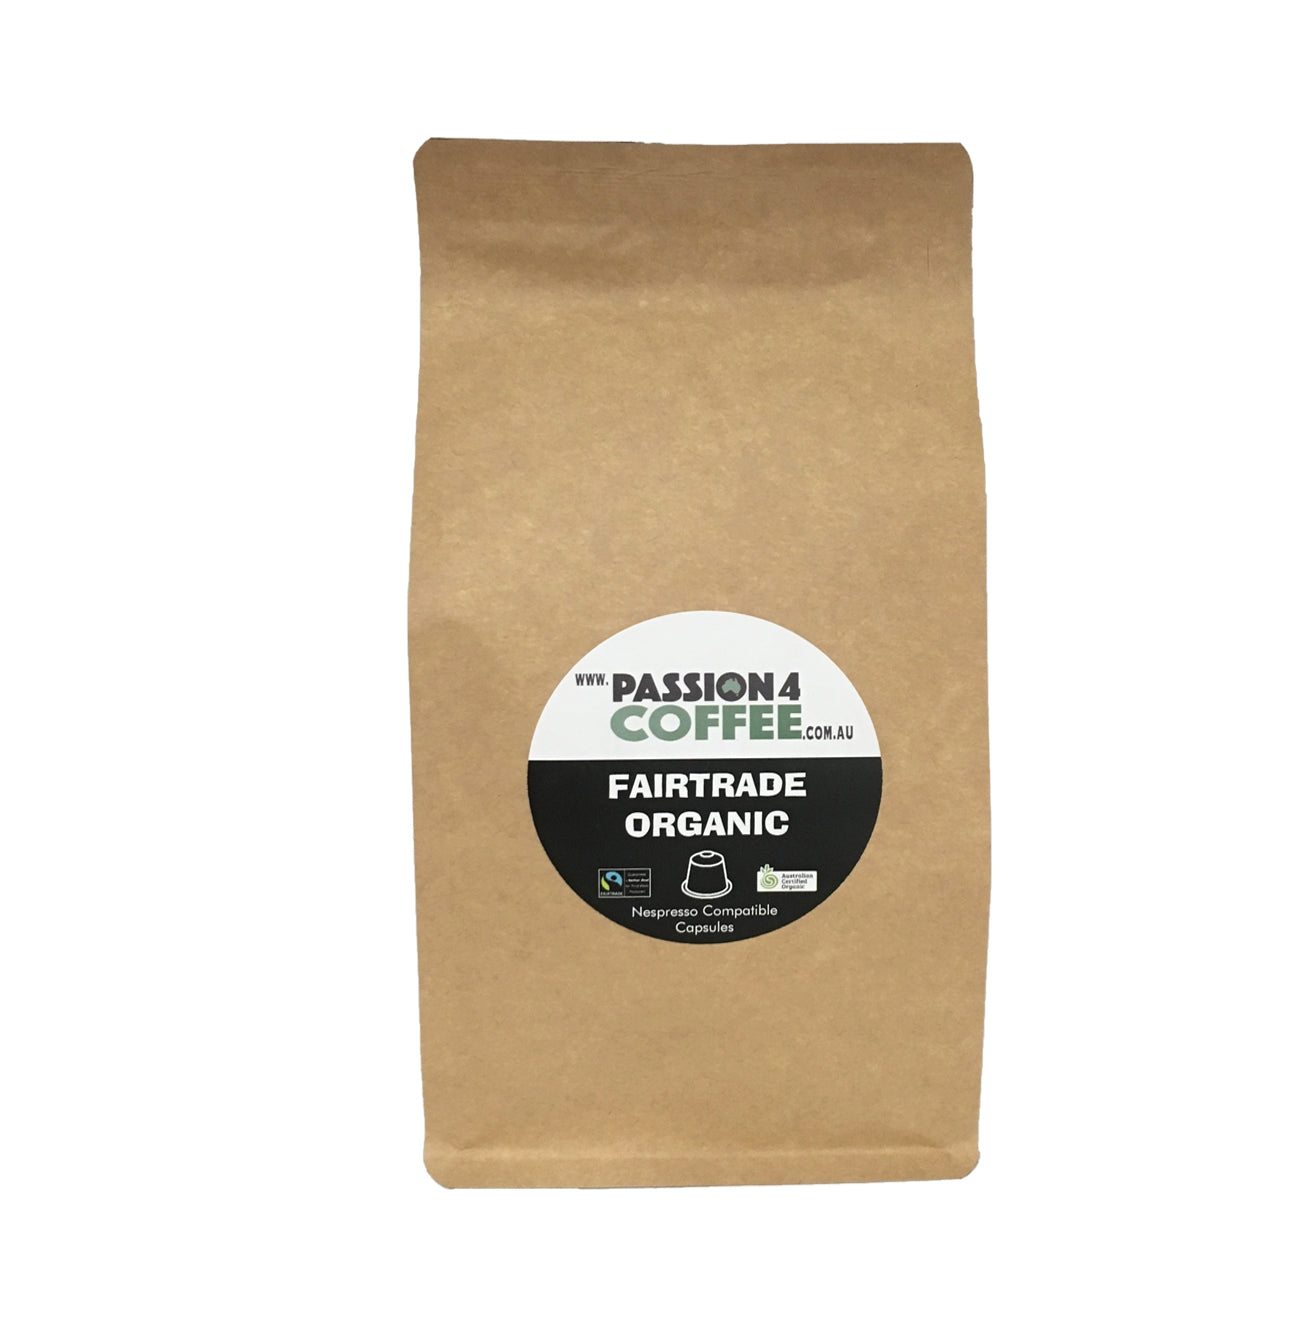 Bio-degradable Fairtrade Organic Nespresso compatible pods (40 pack)